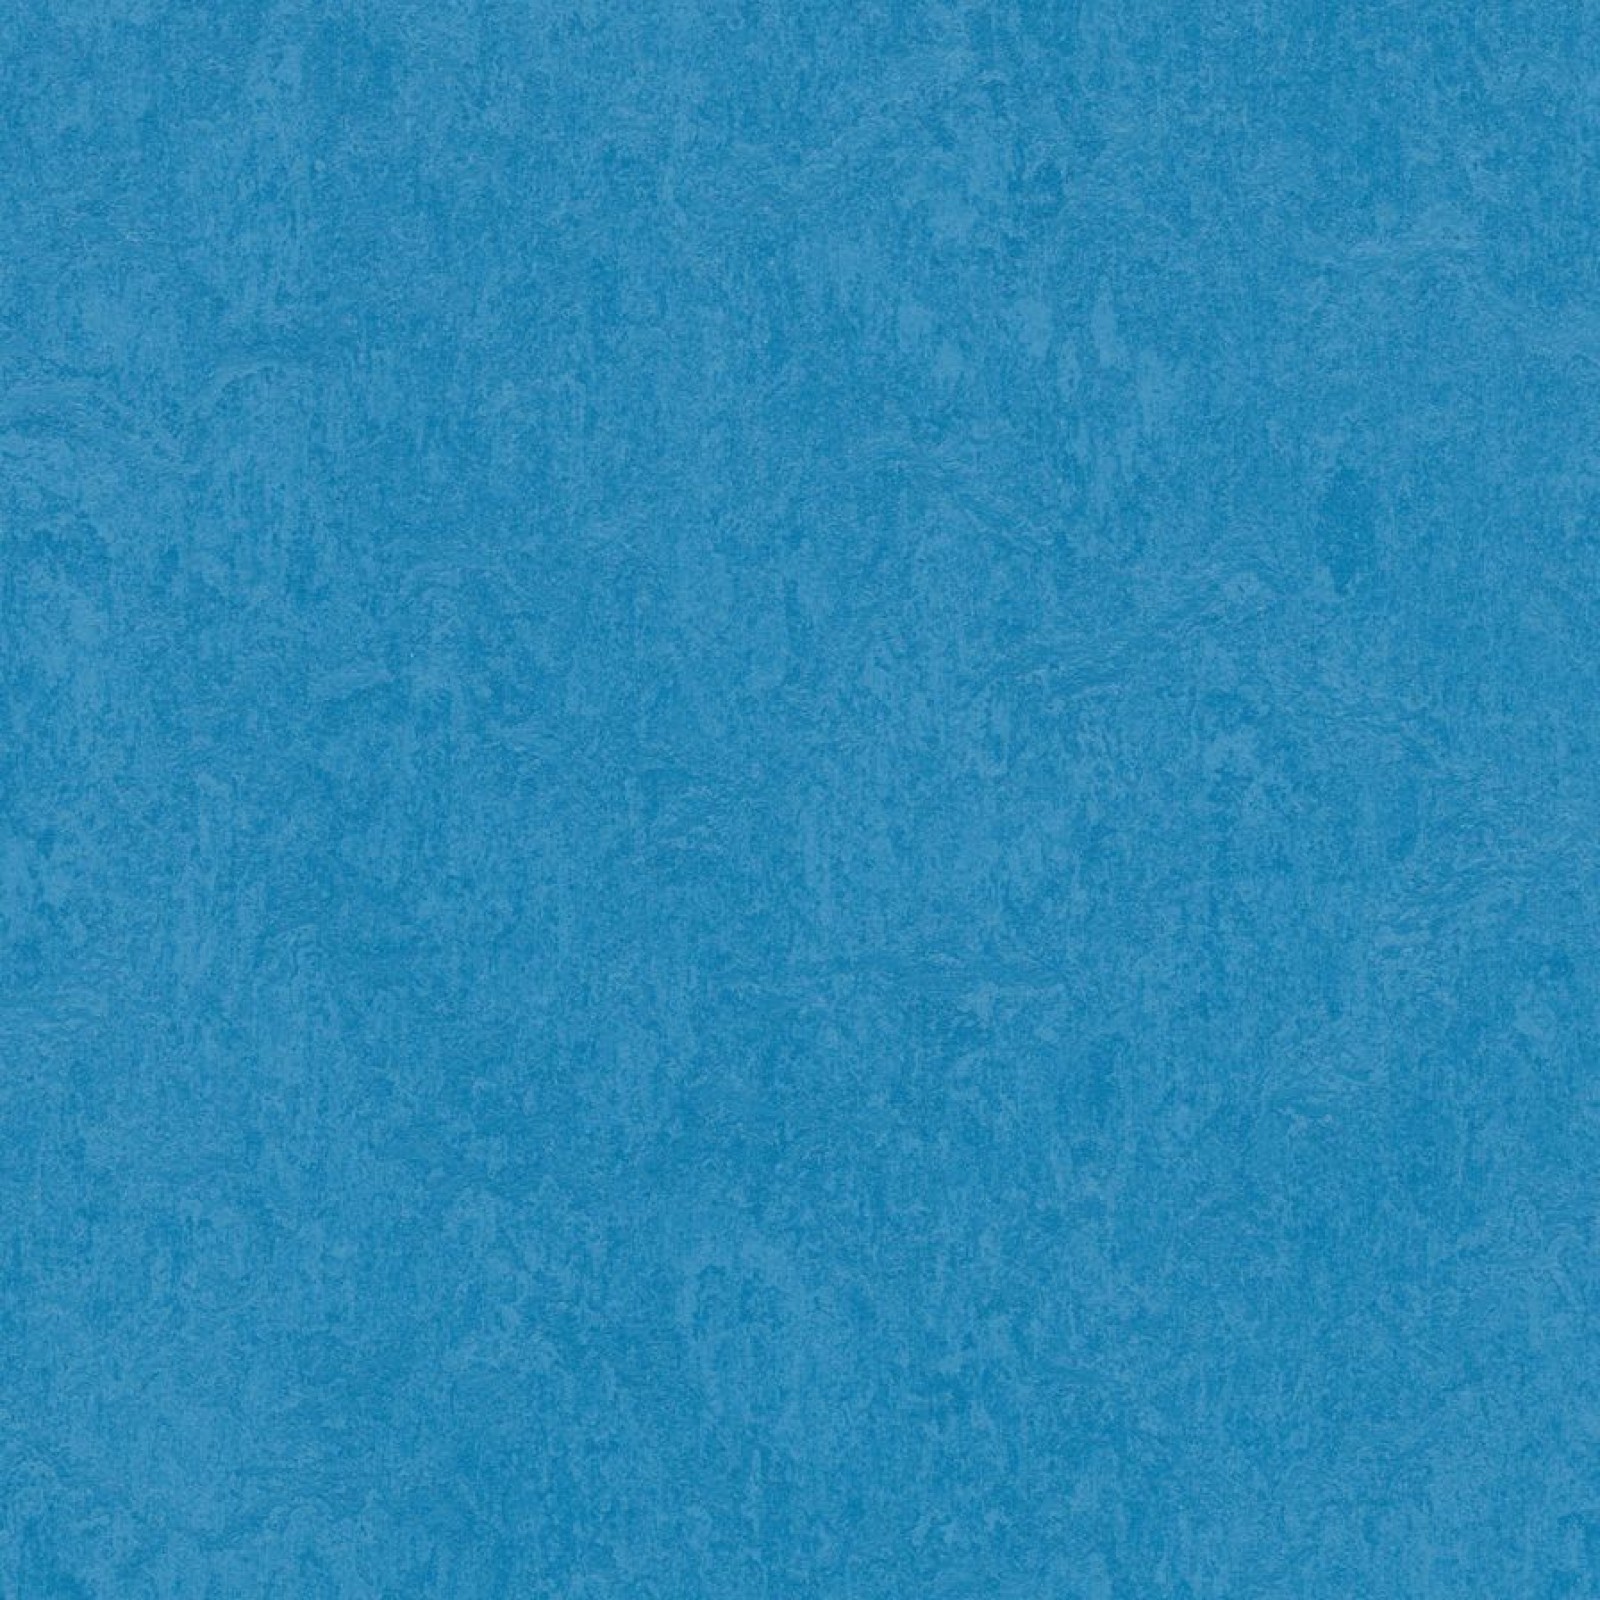 Vzor - 3264 Greek blue